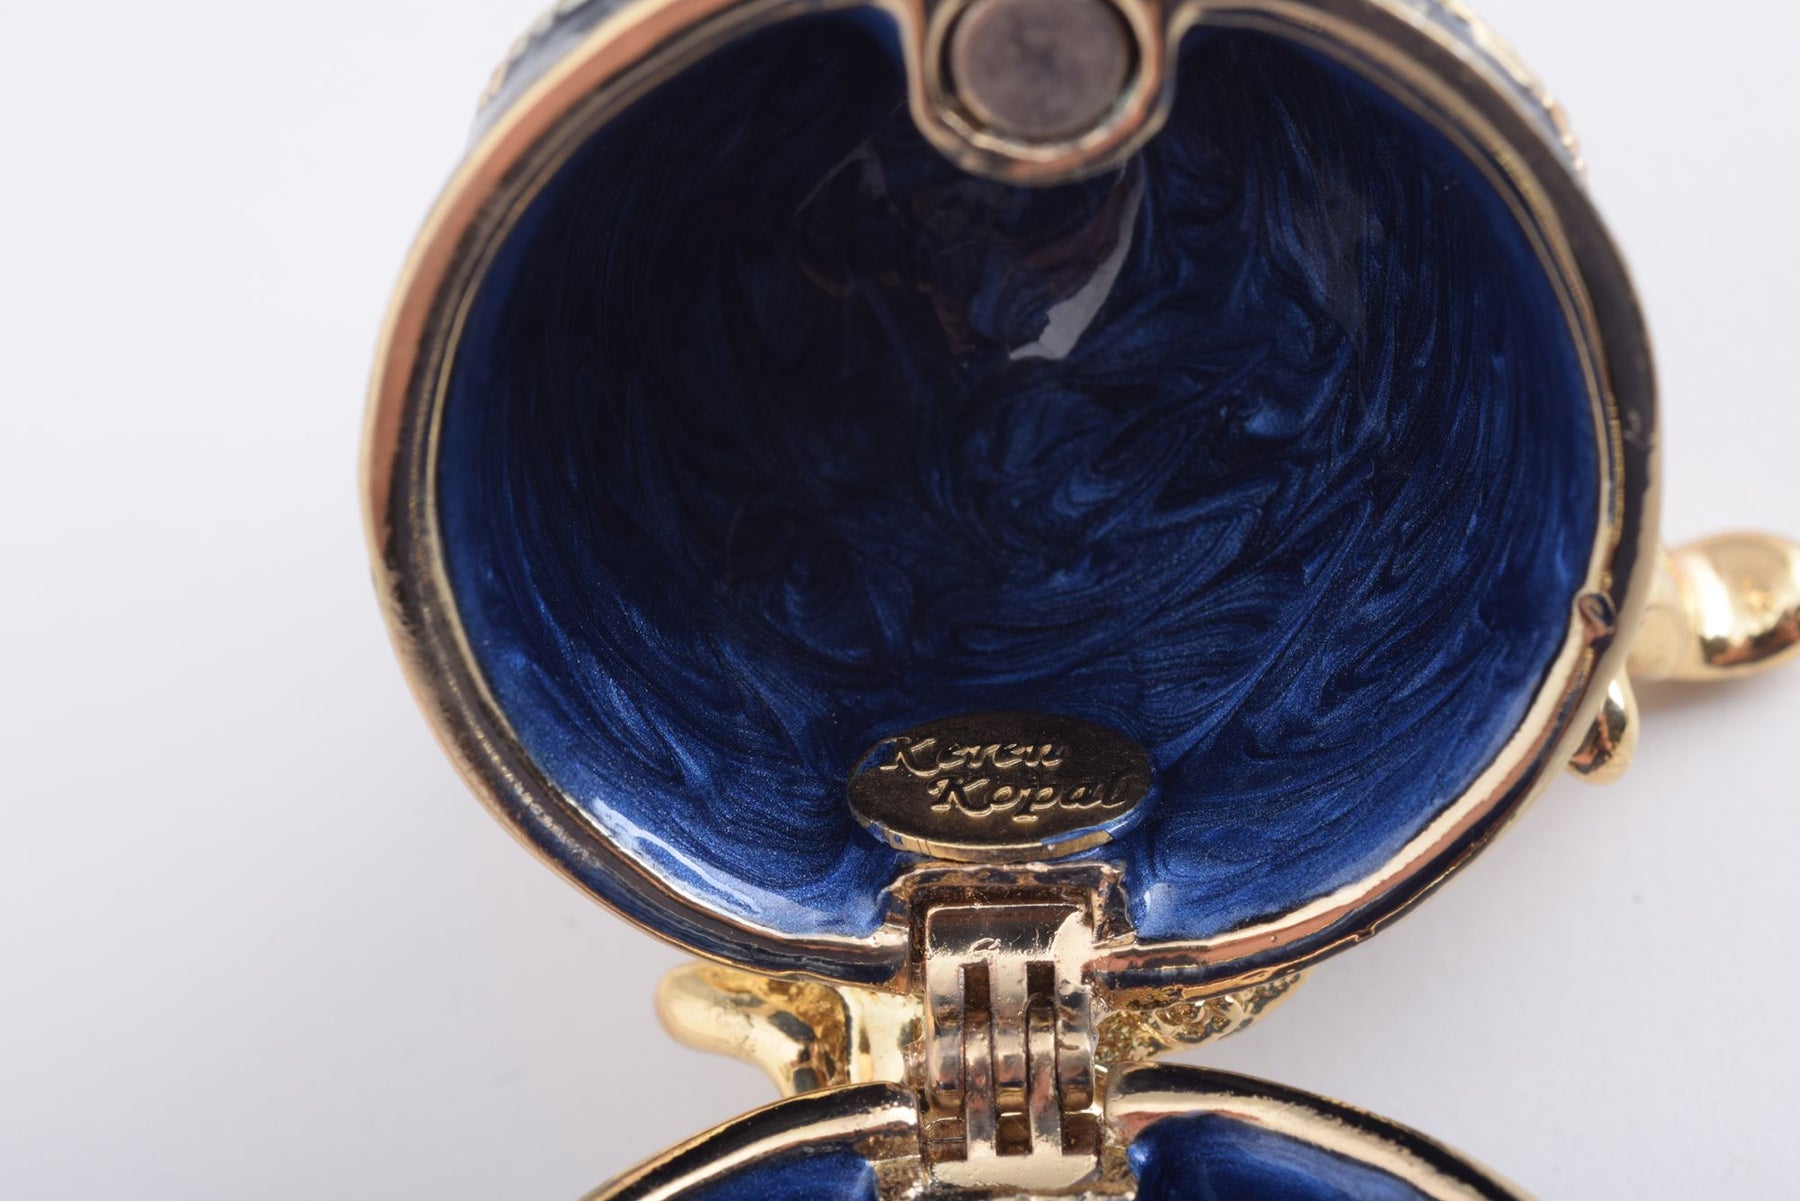 Oeuf Fabergé bleu et or avec une perle sur le dessus